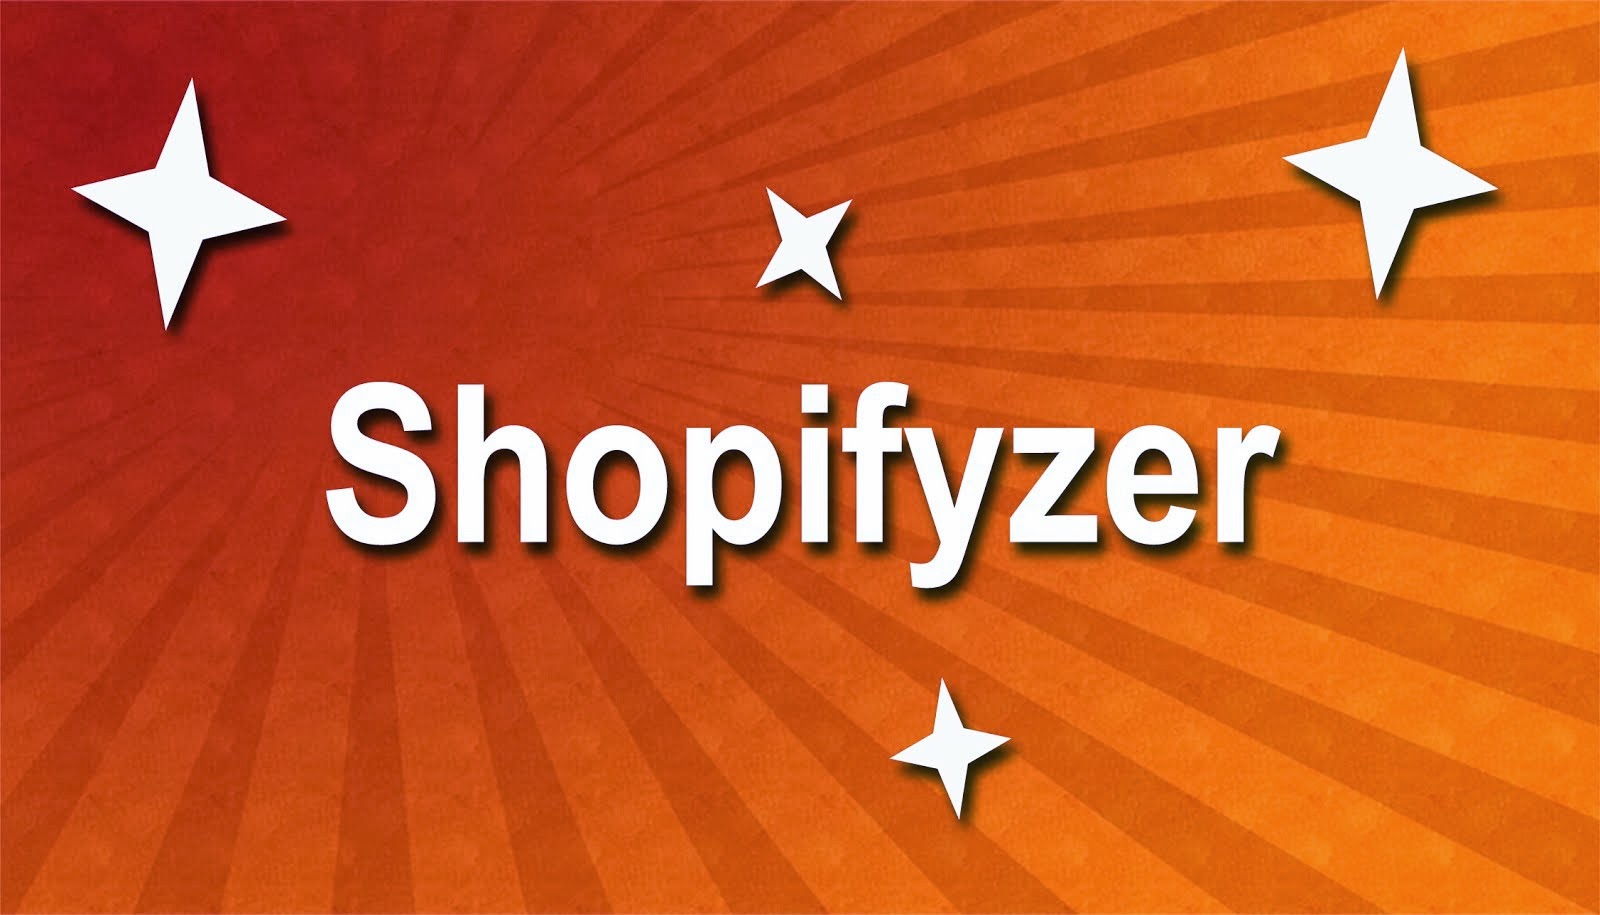 Shopifyzer